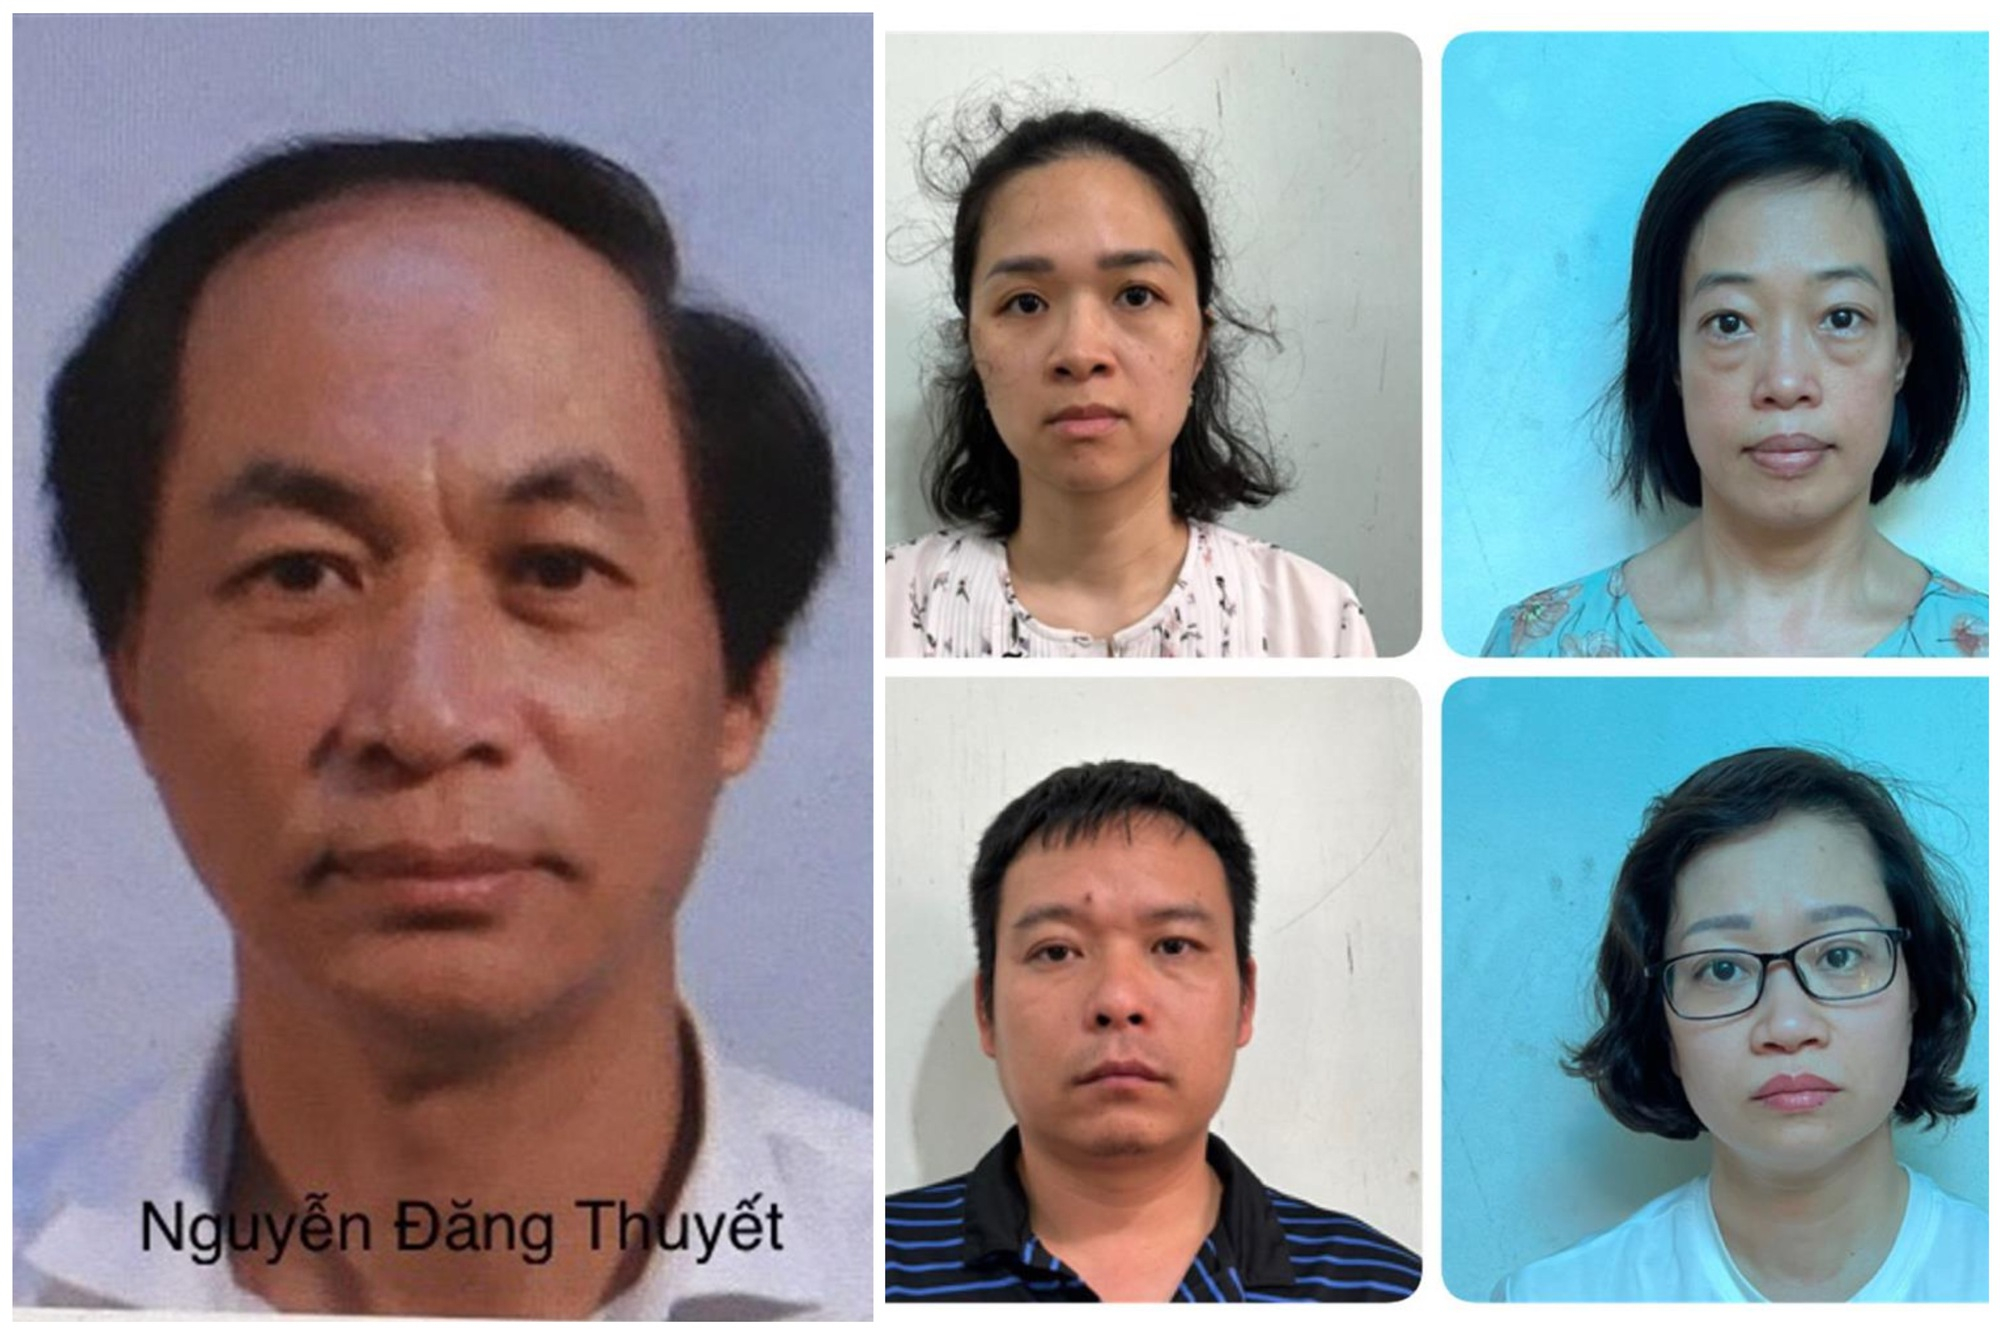 Nguyễn Đăng Thuyết (ảnh lớn) và một số bị can trong vụ án. Ảnh: Bộ Công an